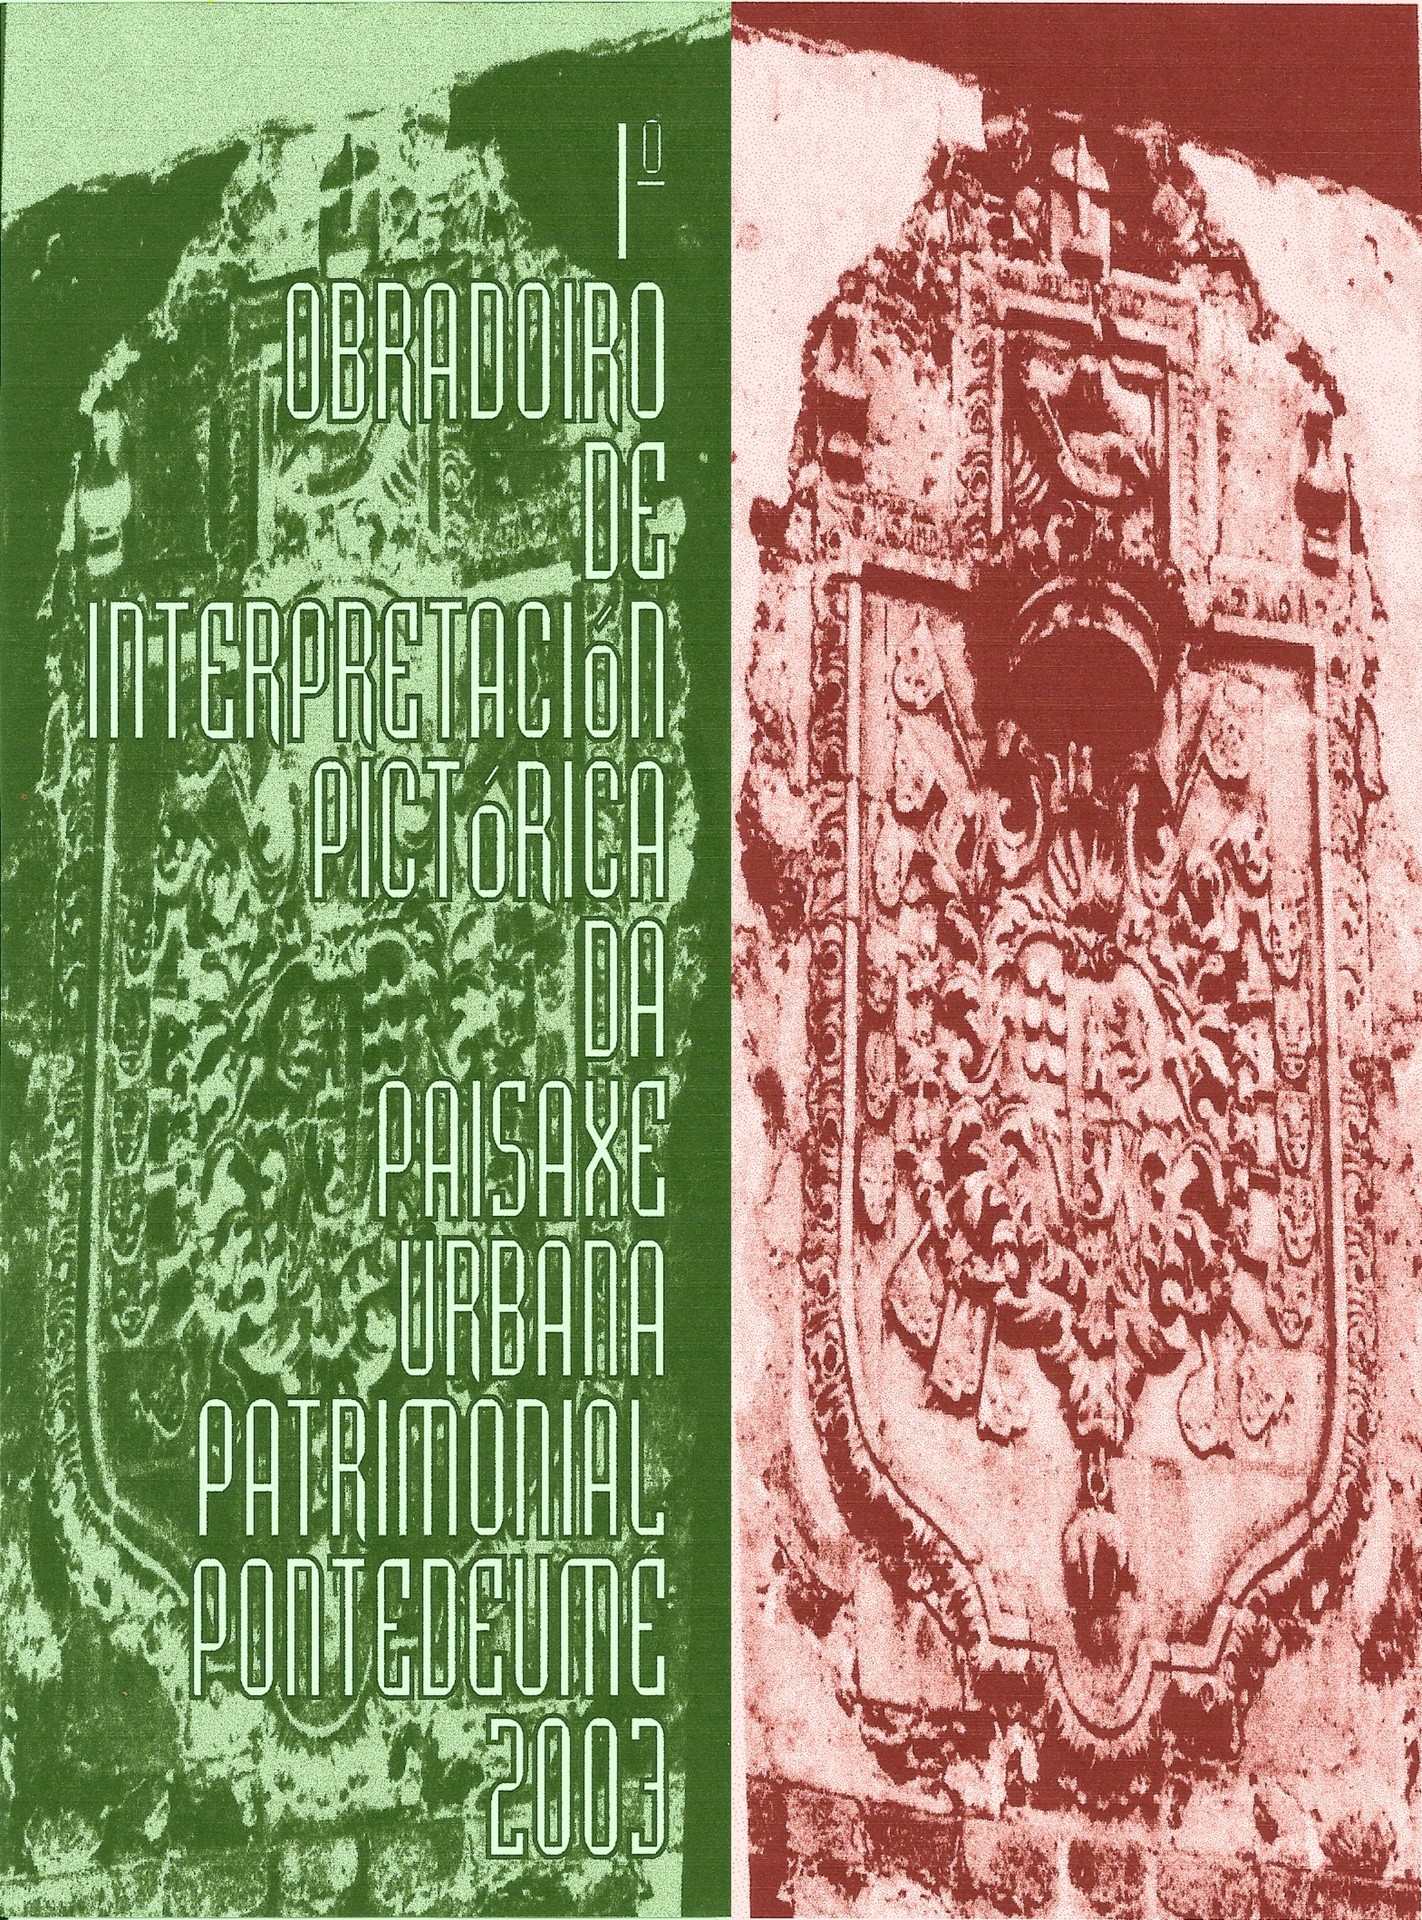 Ladislau da Regueira | Cartaz de Apresentação (2004)